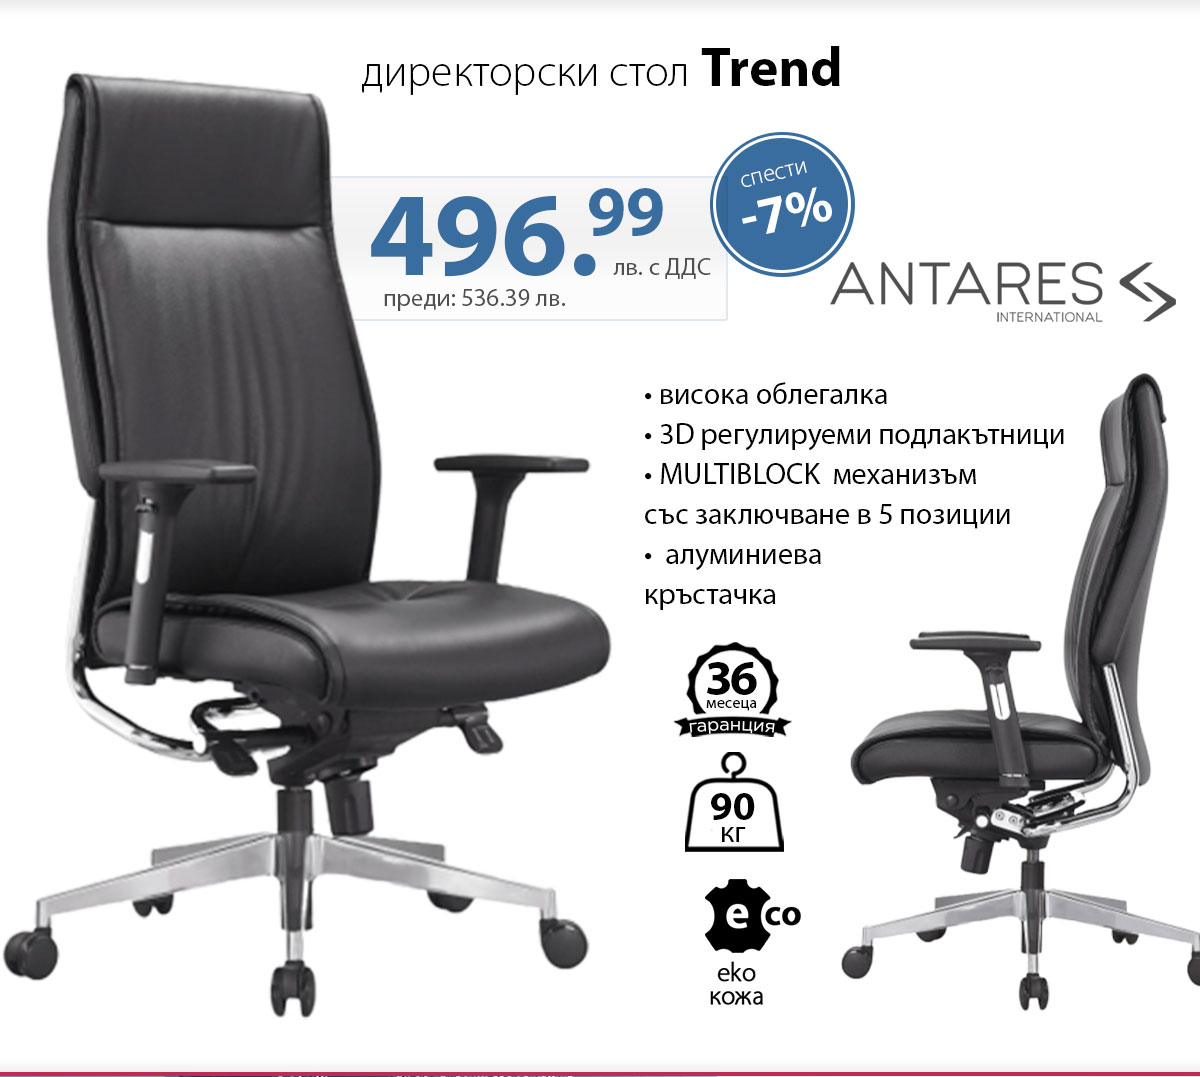 Директорски стол Trend